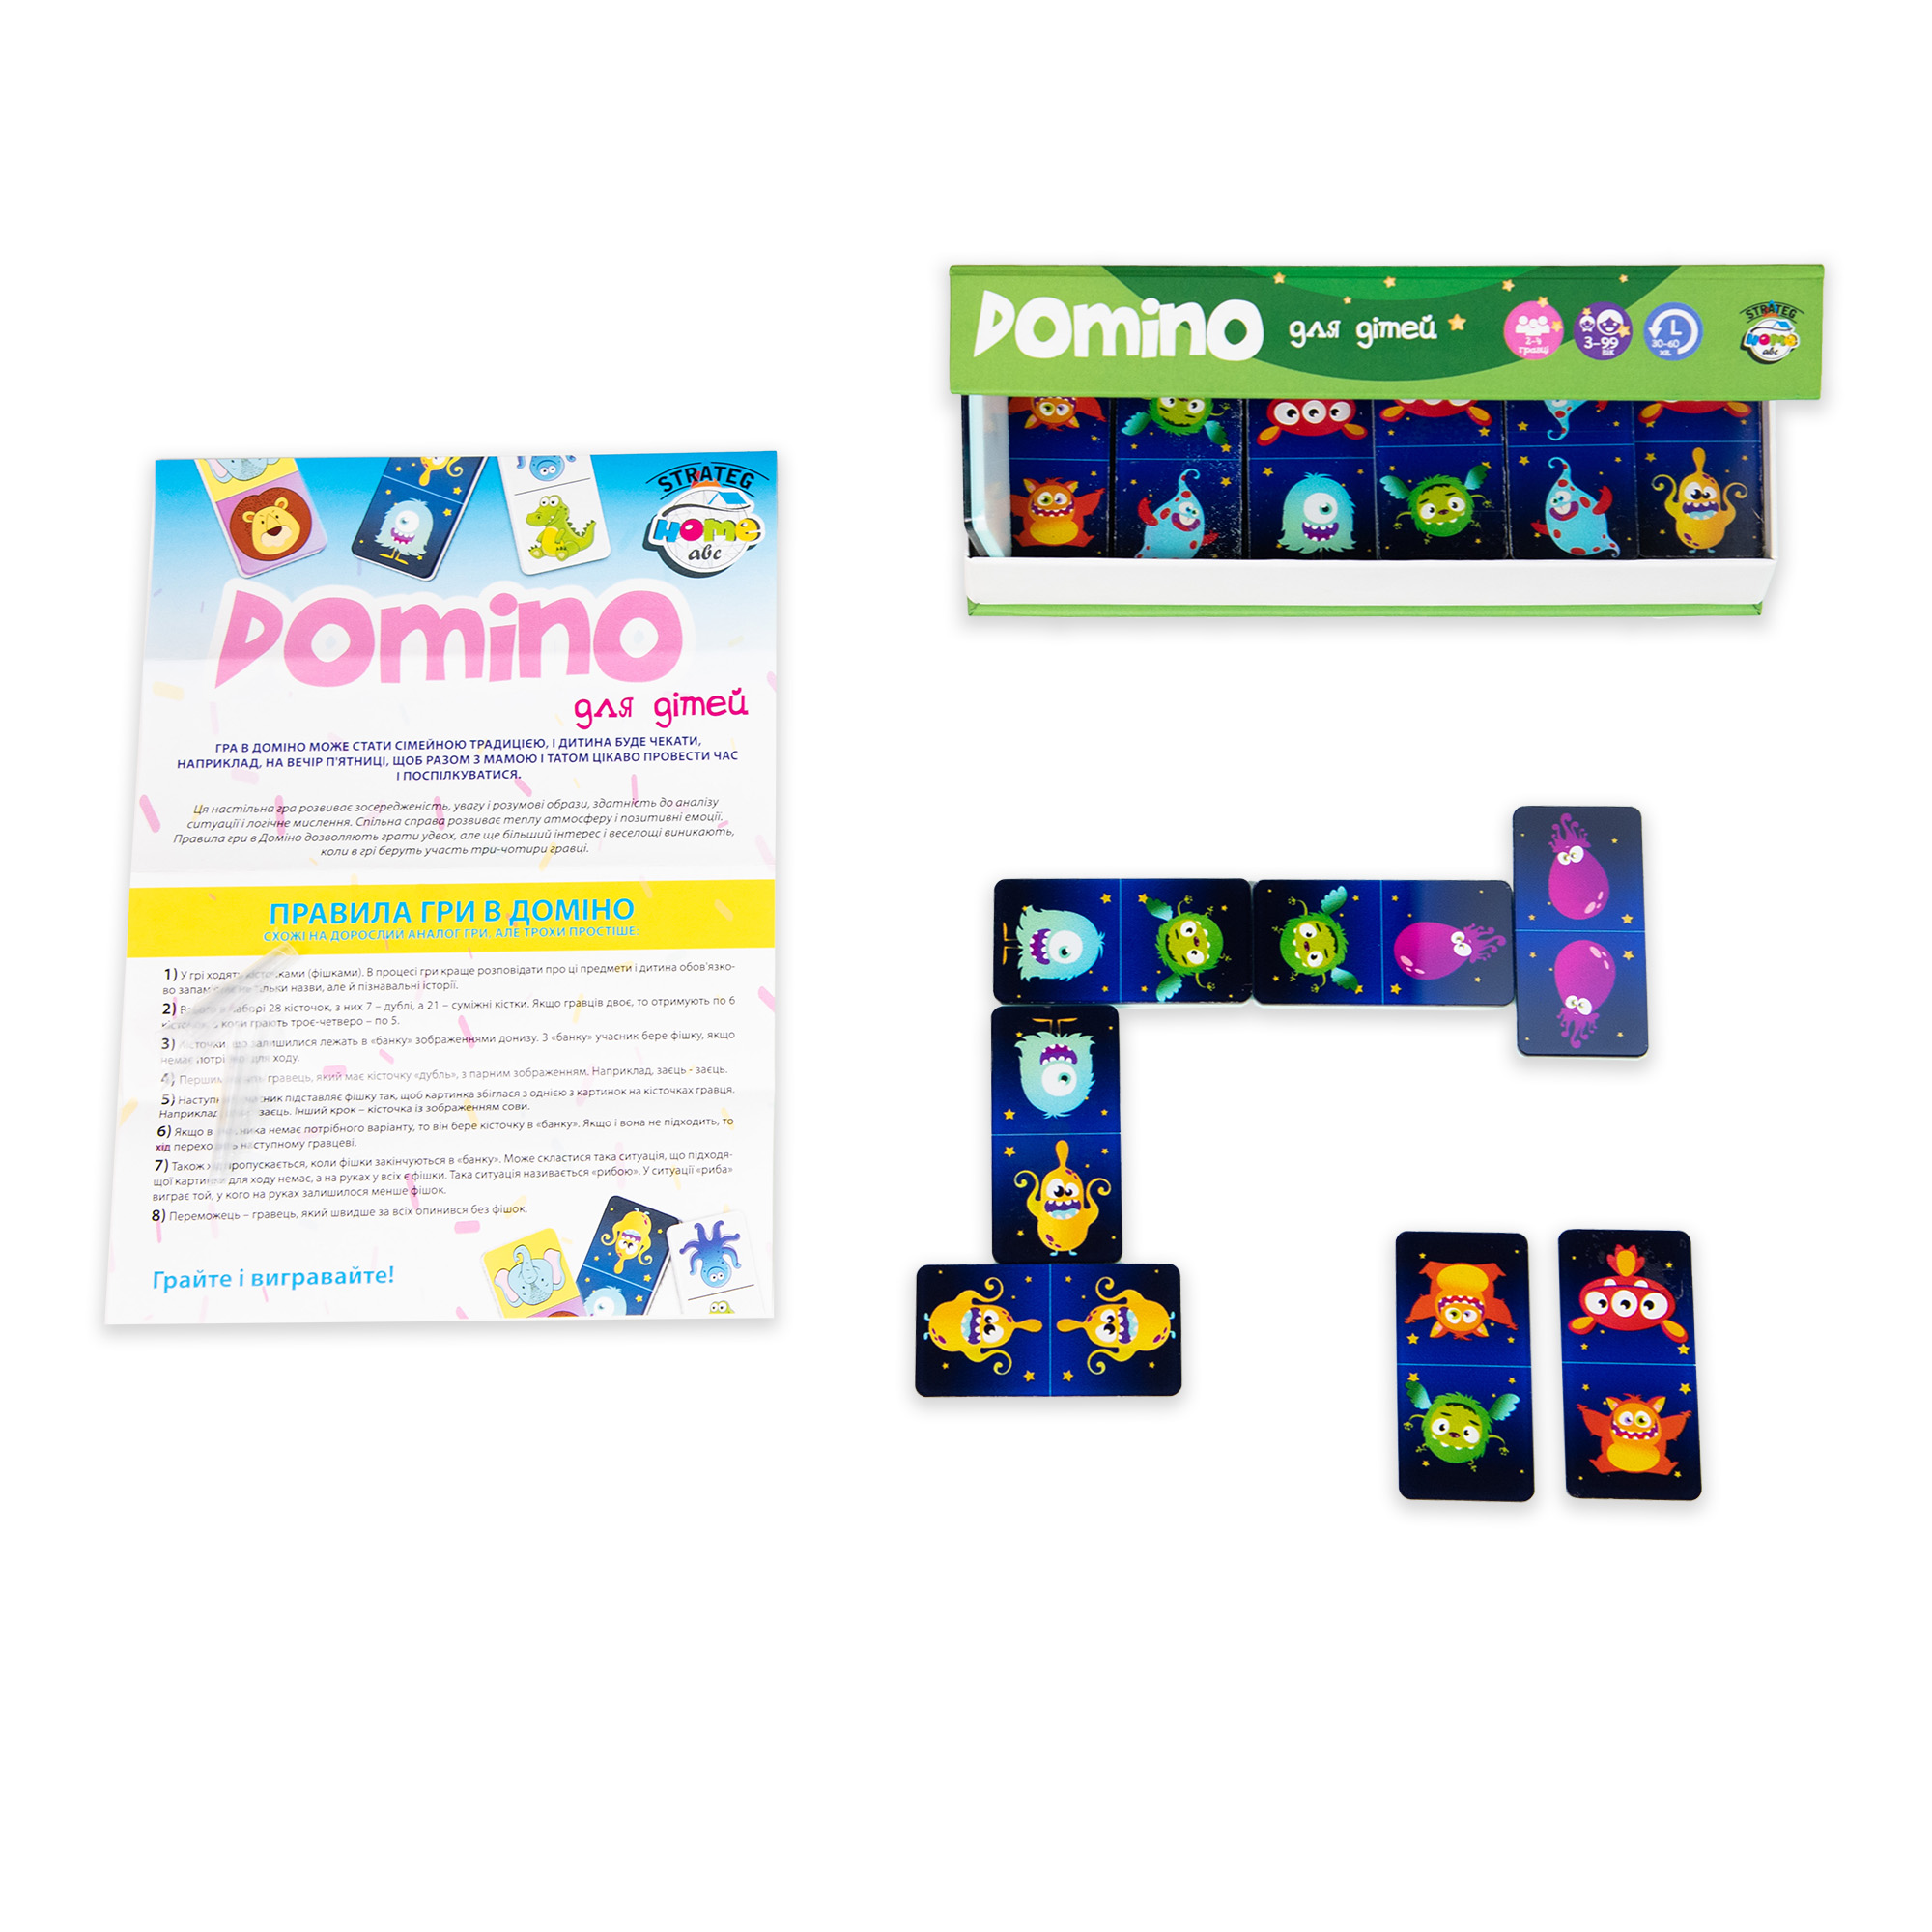 Настольная игра Strateg Domino Limited edition монстрики на украинском языке (30736)